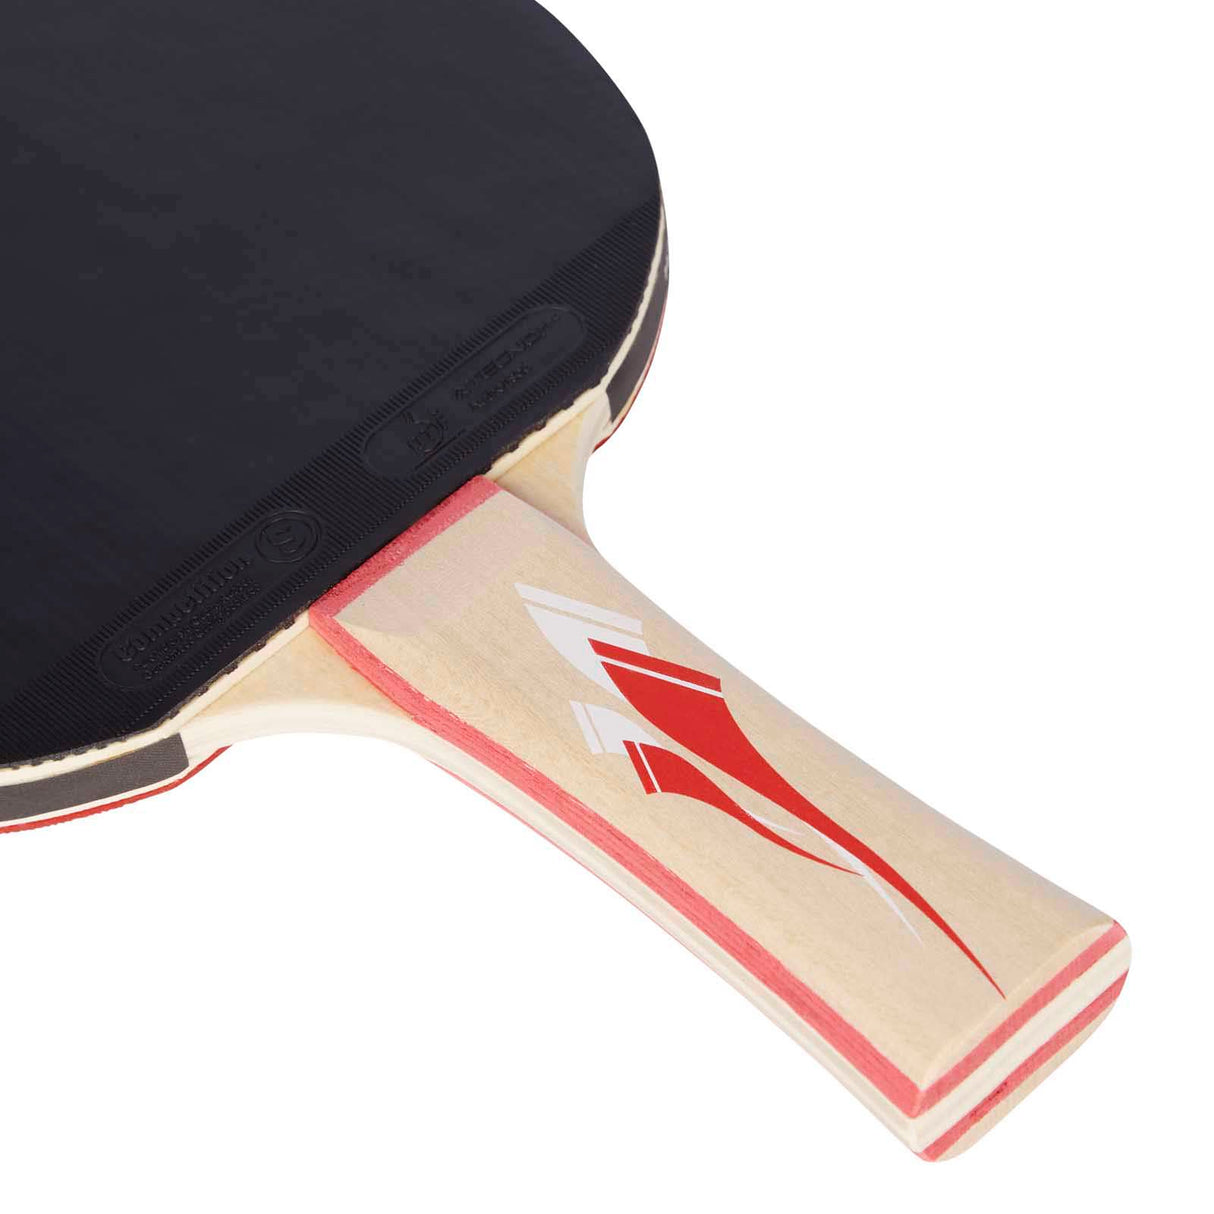 Pro Touch Pro 5000 Table Tennis Bat